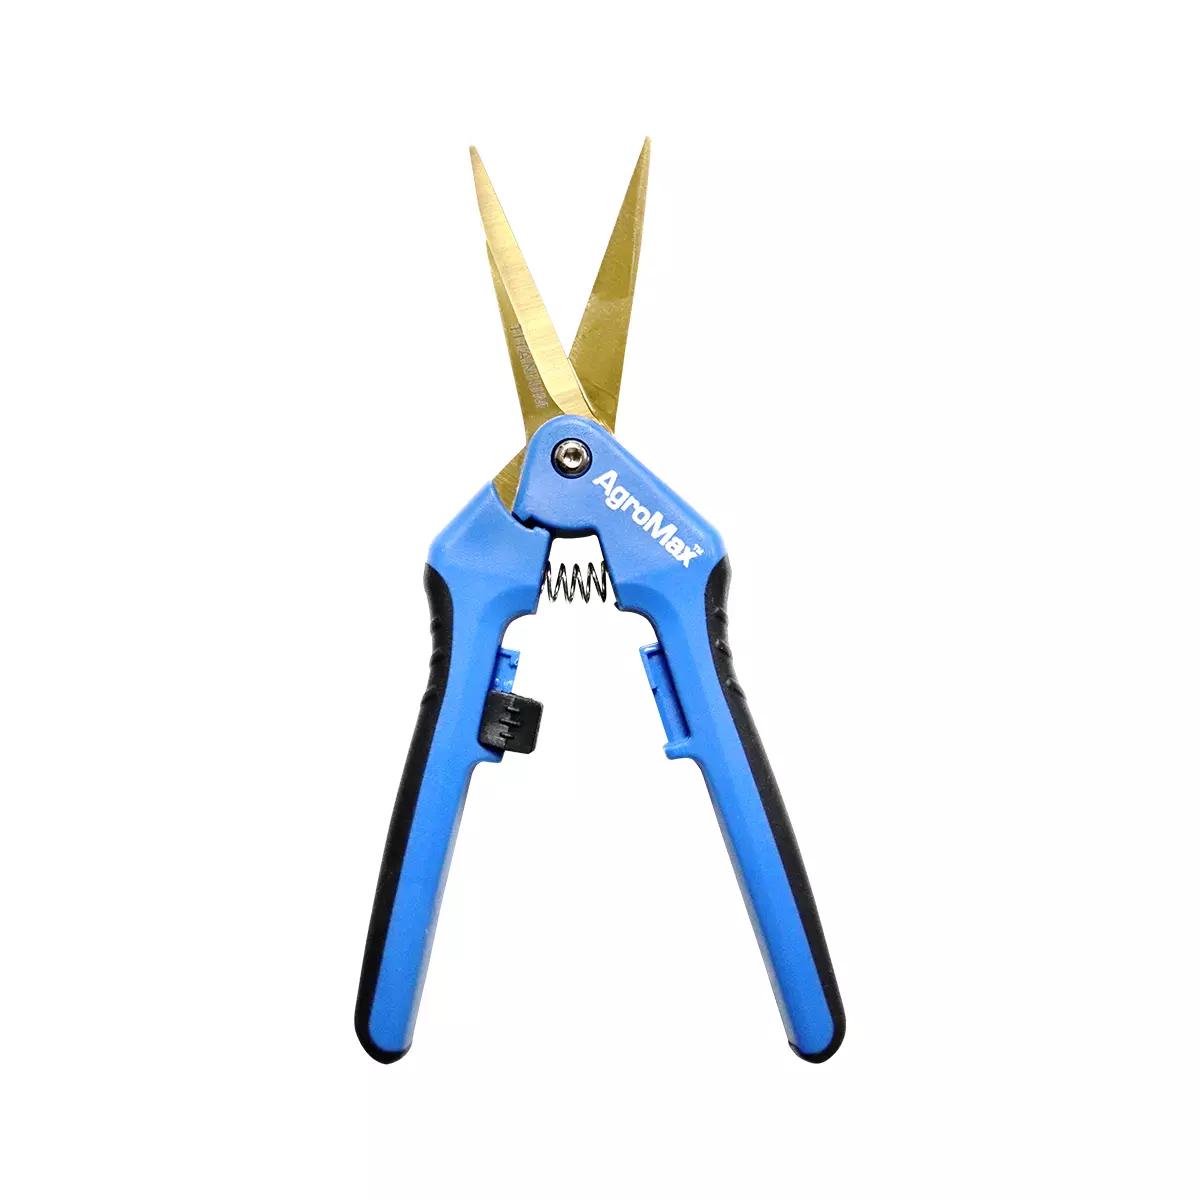 AgroMax Titanium Blade Trimming Scissors